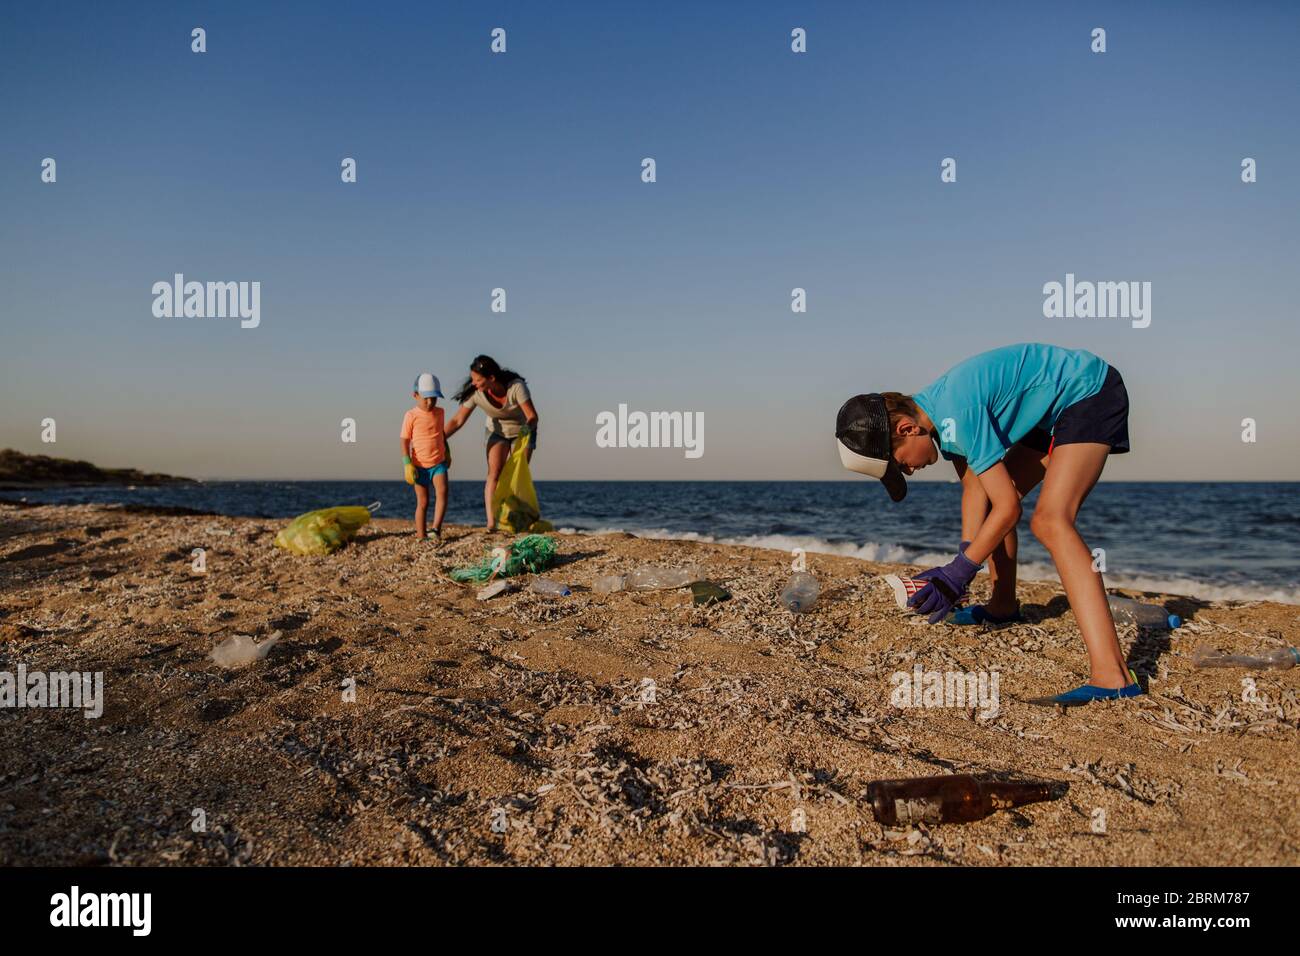 Garçon collectant la litière sur la plage avec sa mère et son frère. Deux garçons et une femme ramassant les ordures trouvées sur la plage et les mettant dans un bac en plastique. Banque D'Images